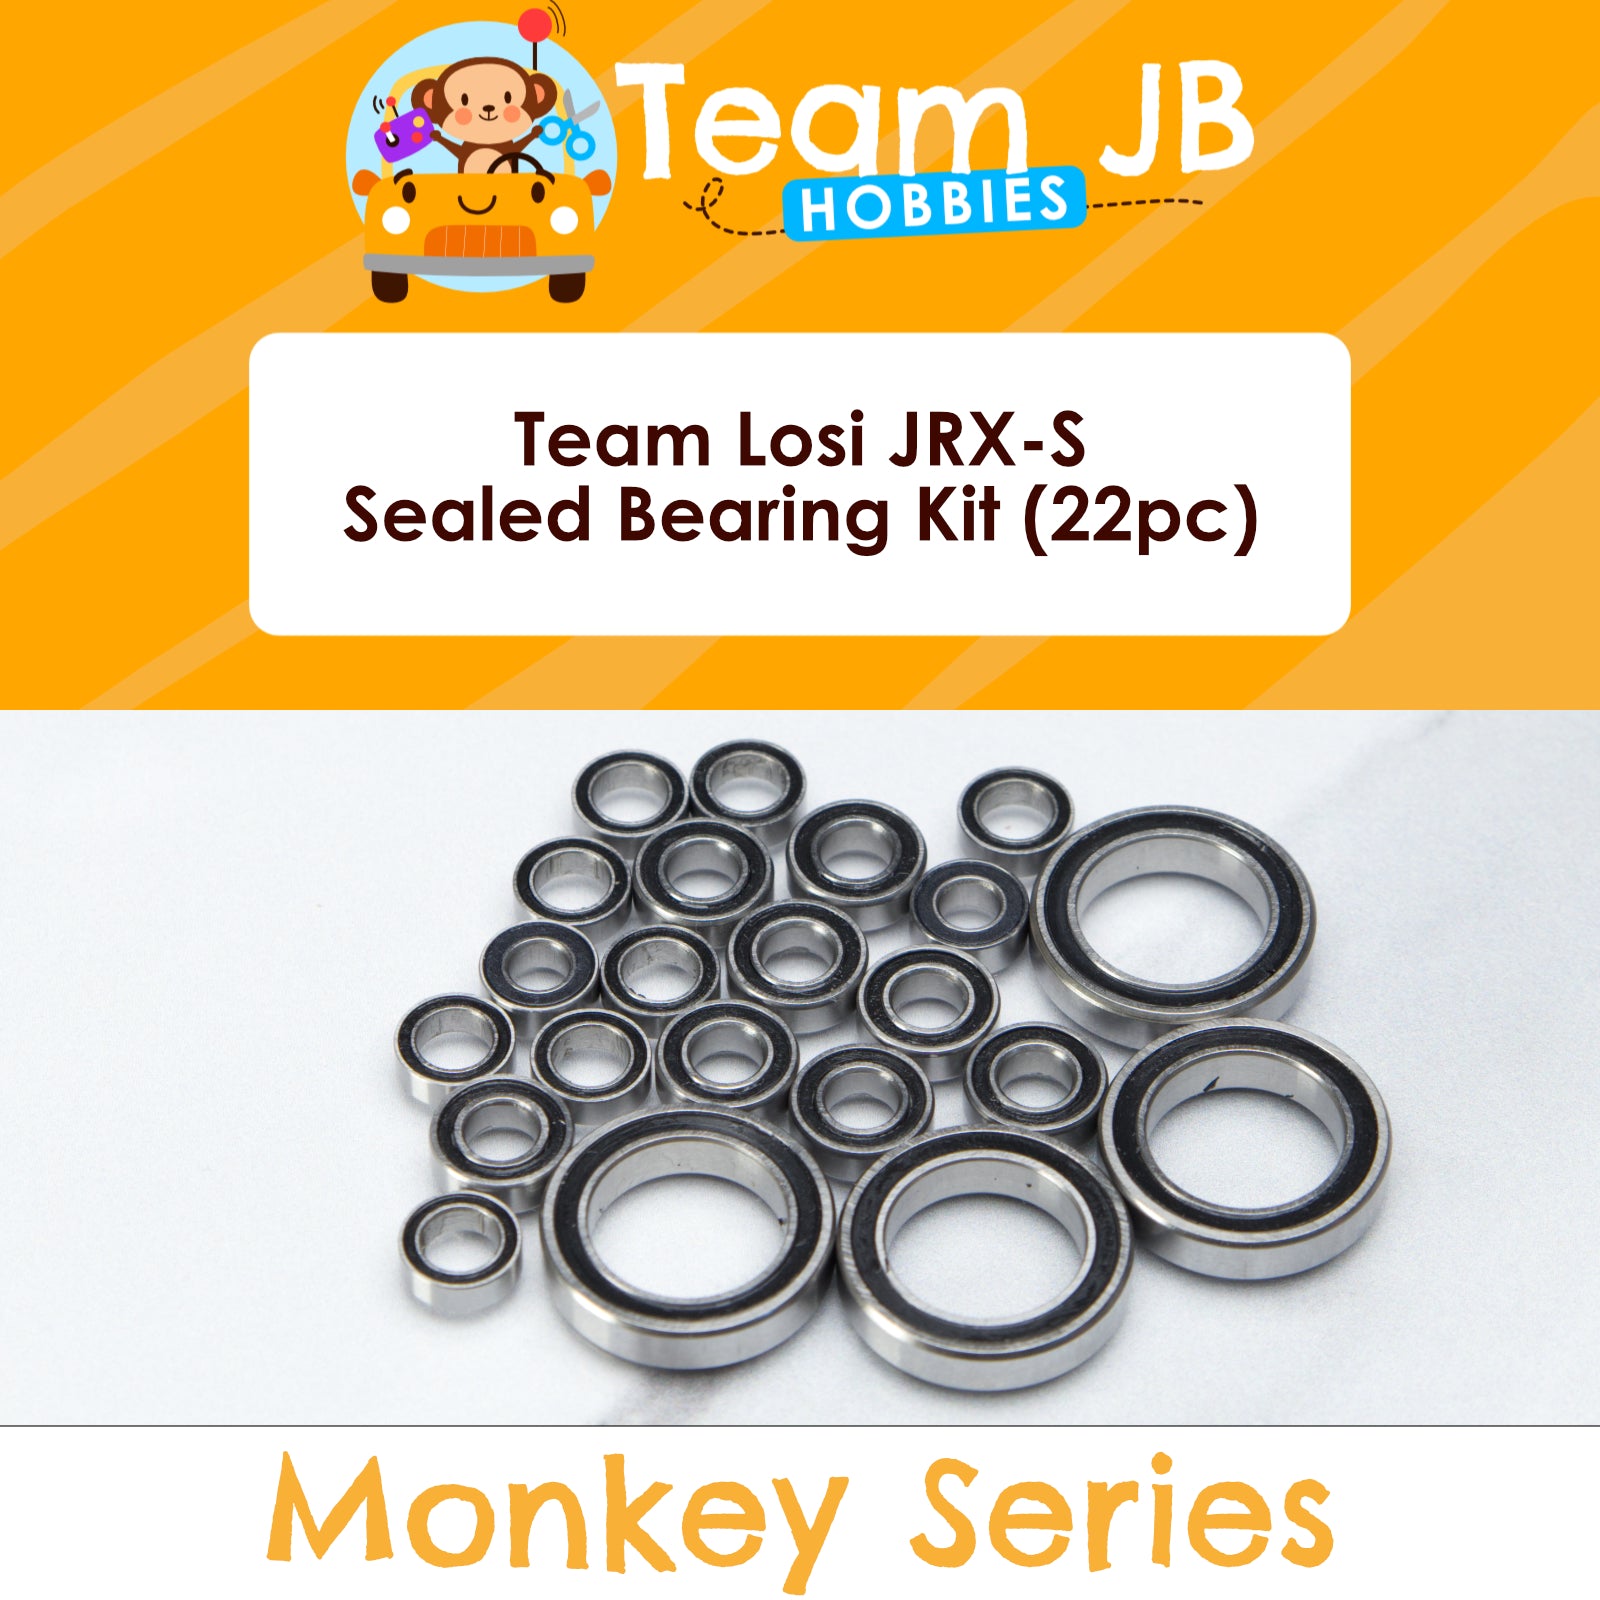 Team Losi JRX-S - Sealed Bearing Kit